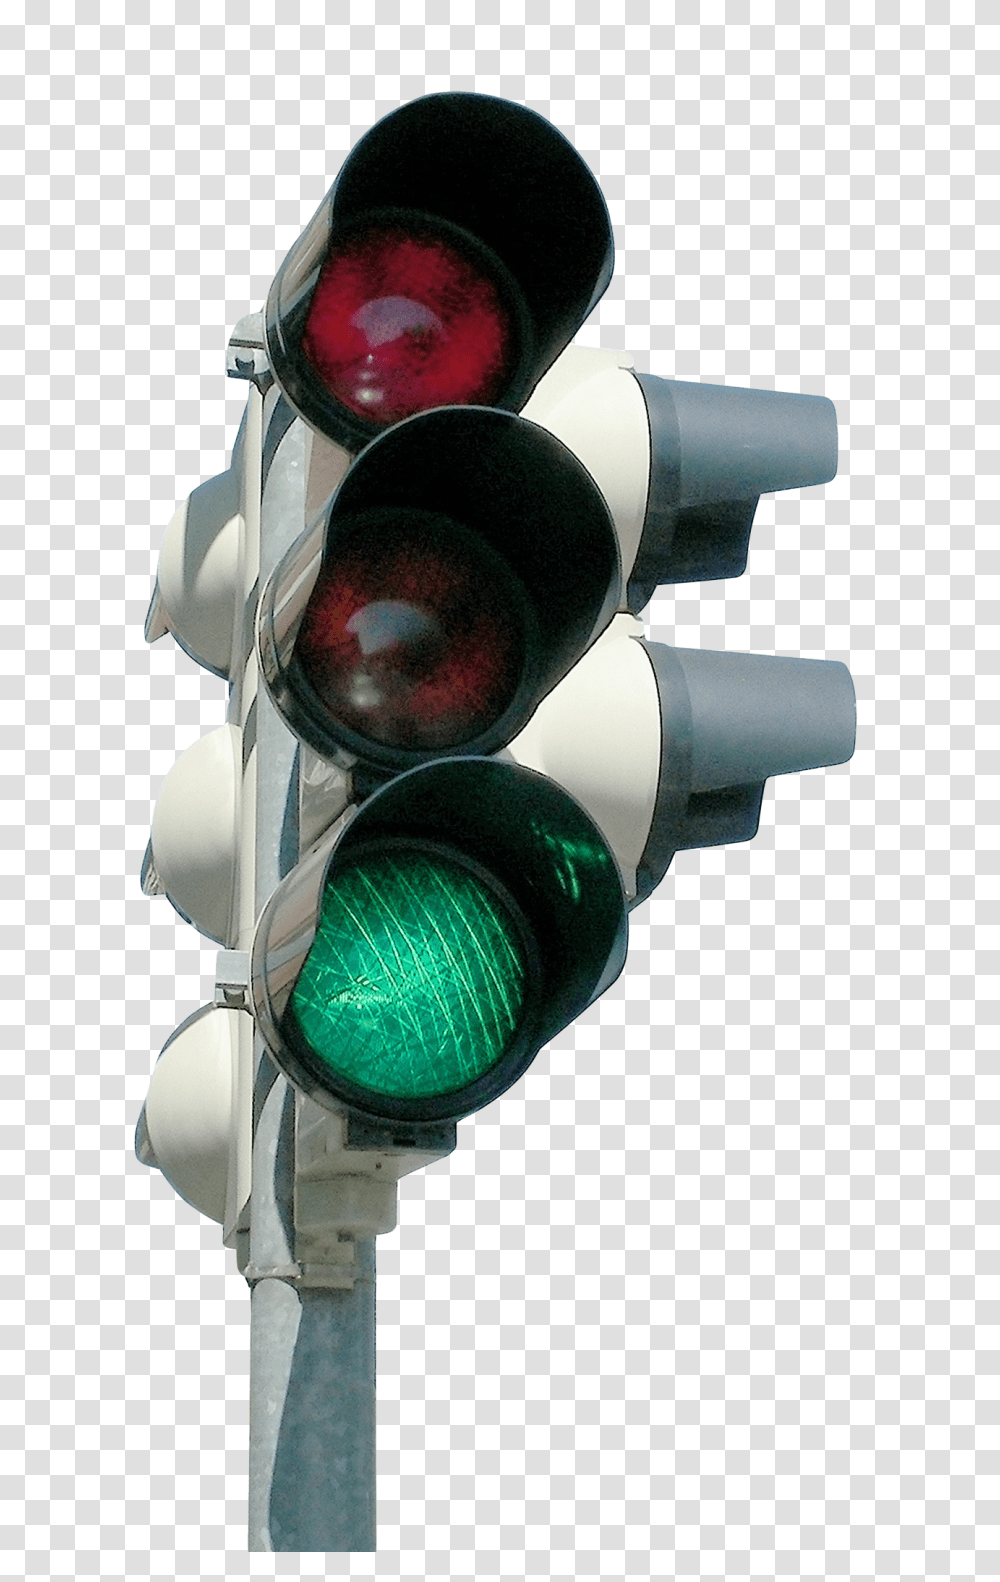 Traffic Light Image Transparent Png